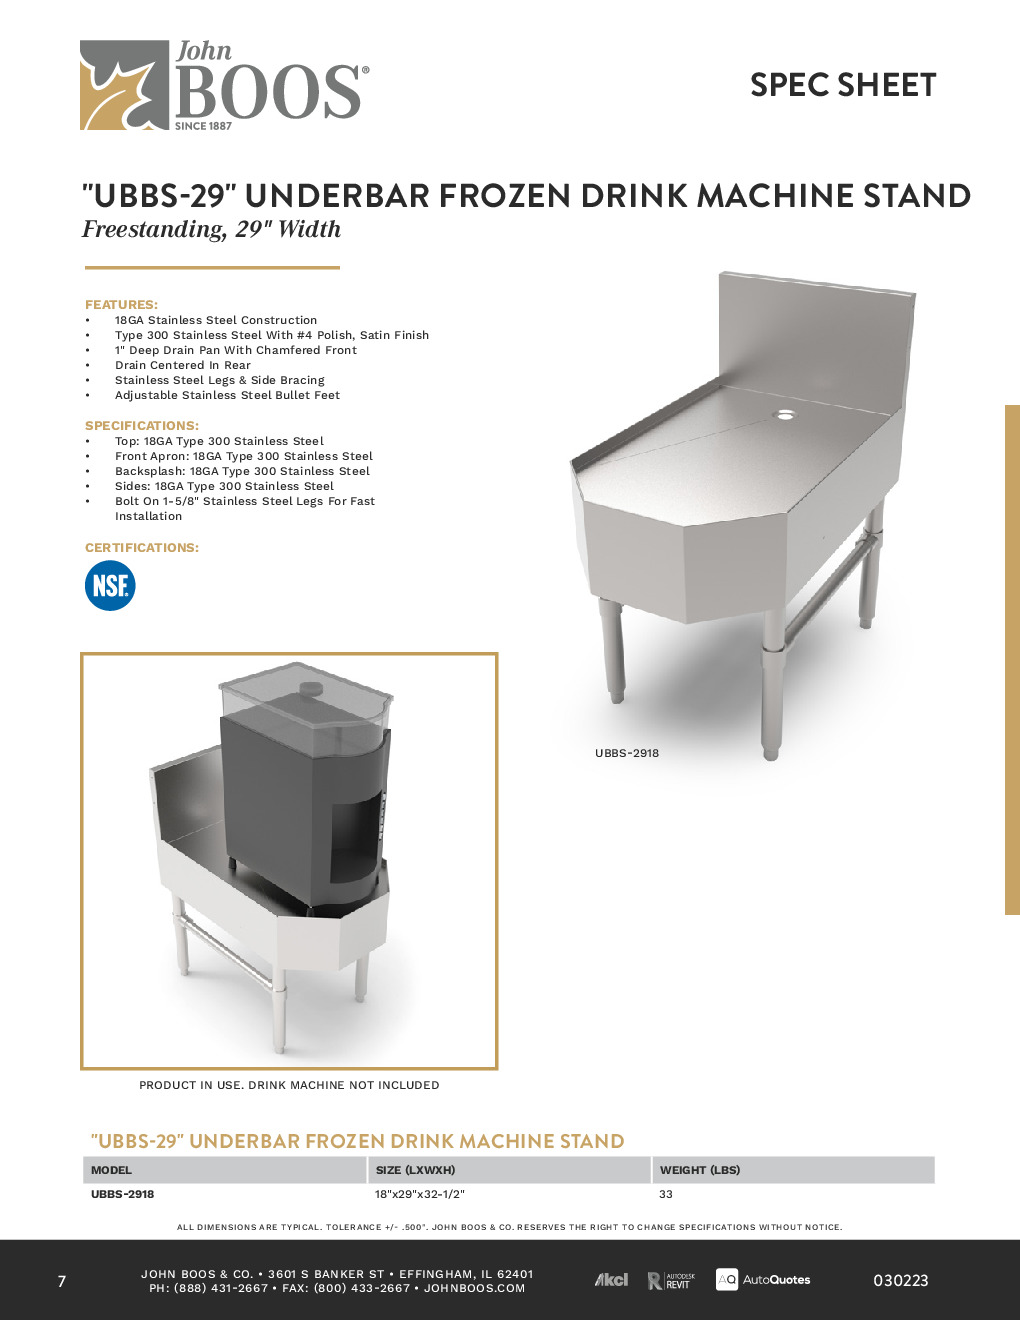 John Boos UBBS-2918 Underbar Frozen Drink Machine Stand